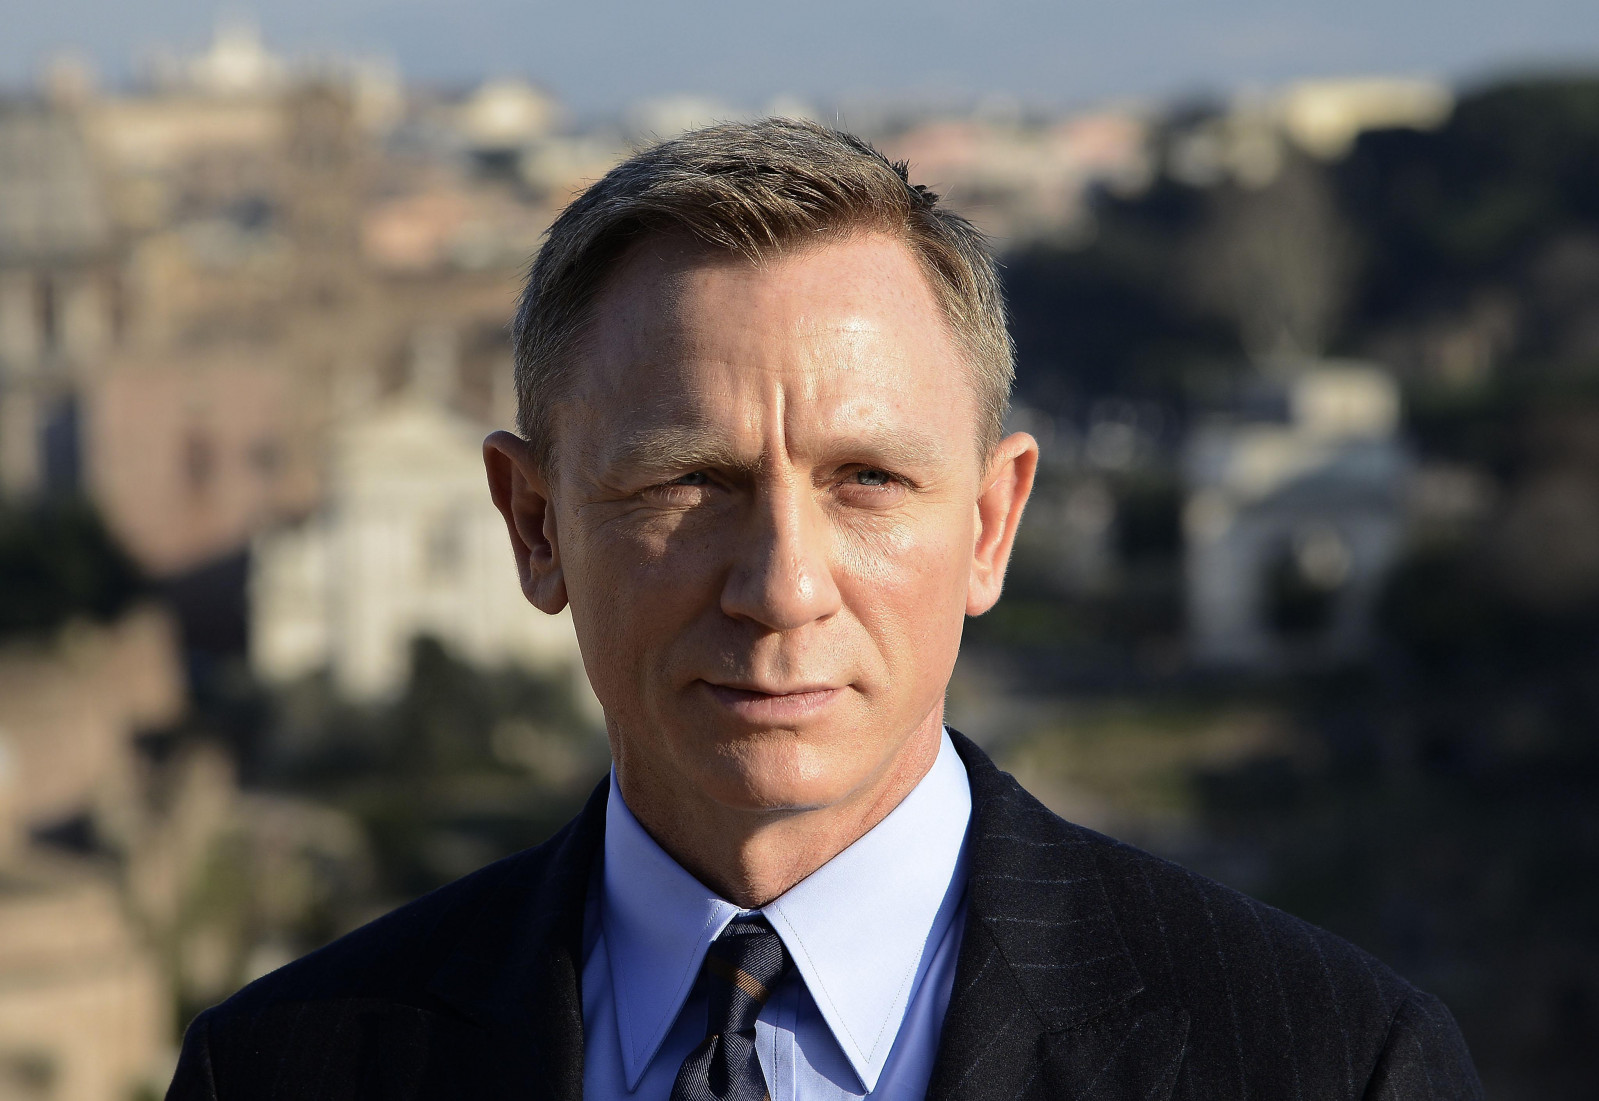 Дэниэл Крэйг (Daniel Craig)